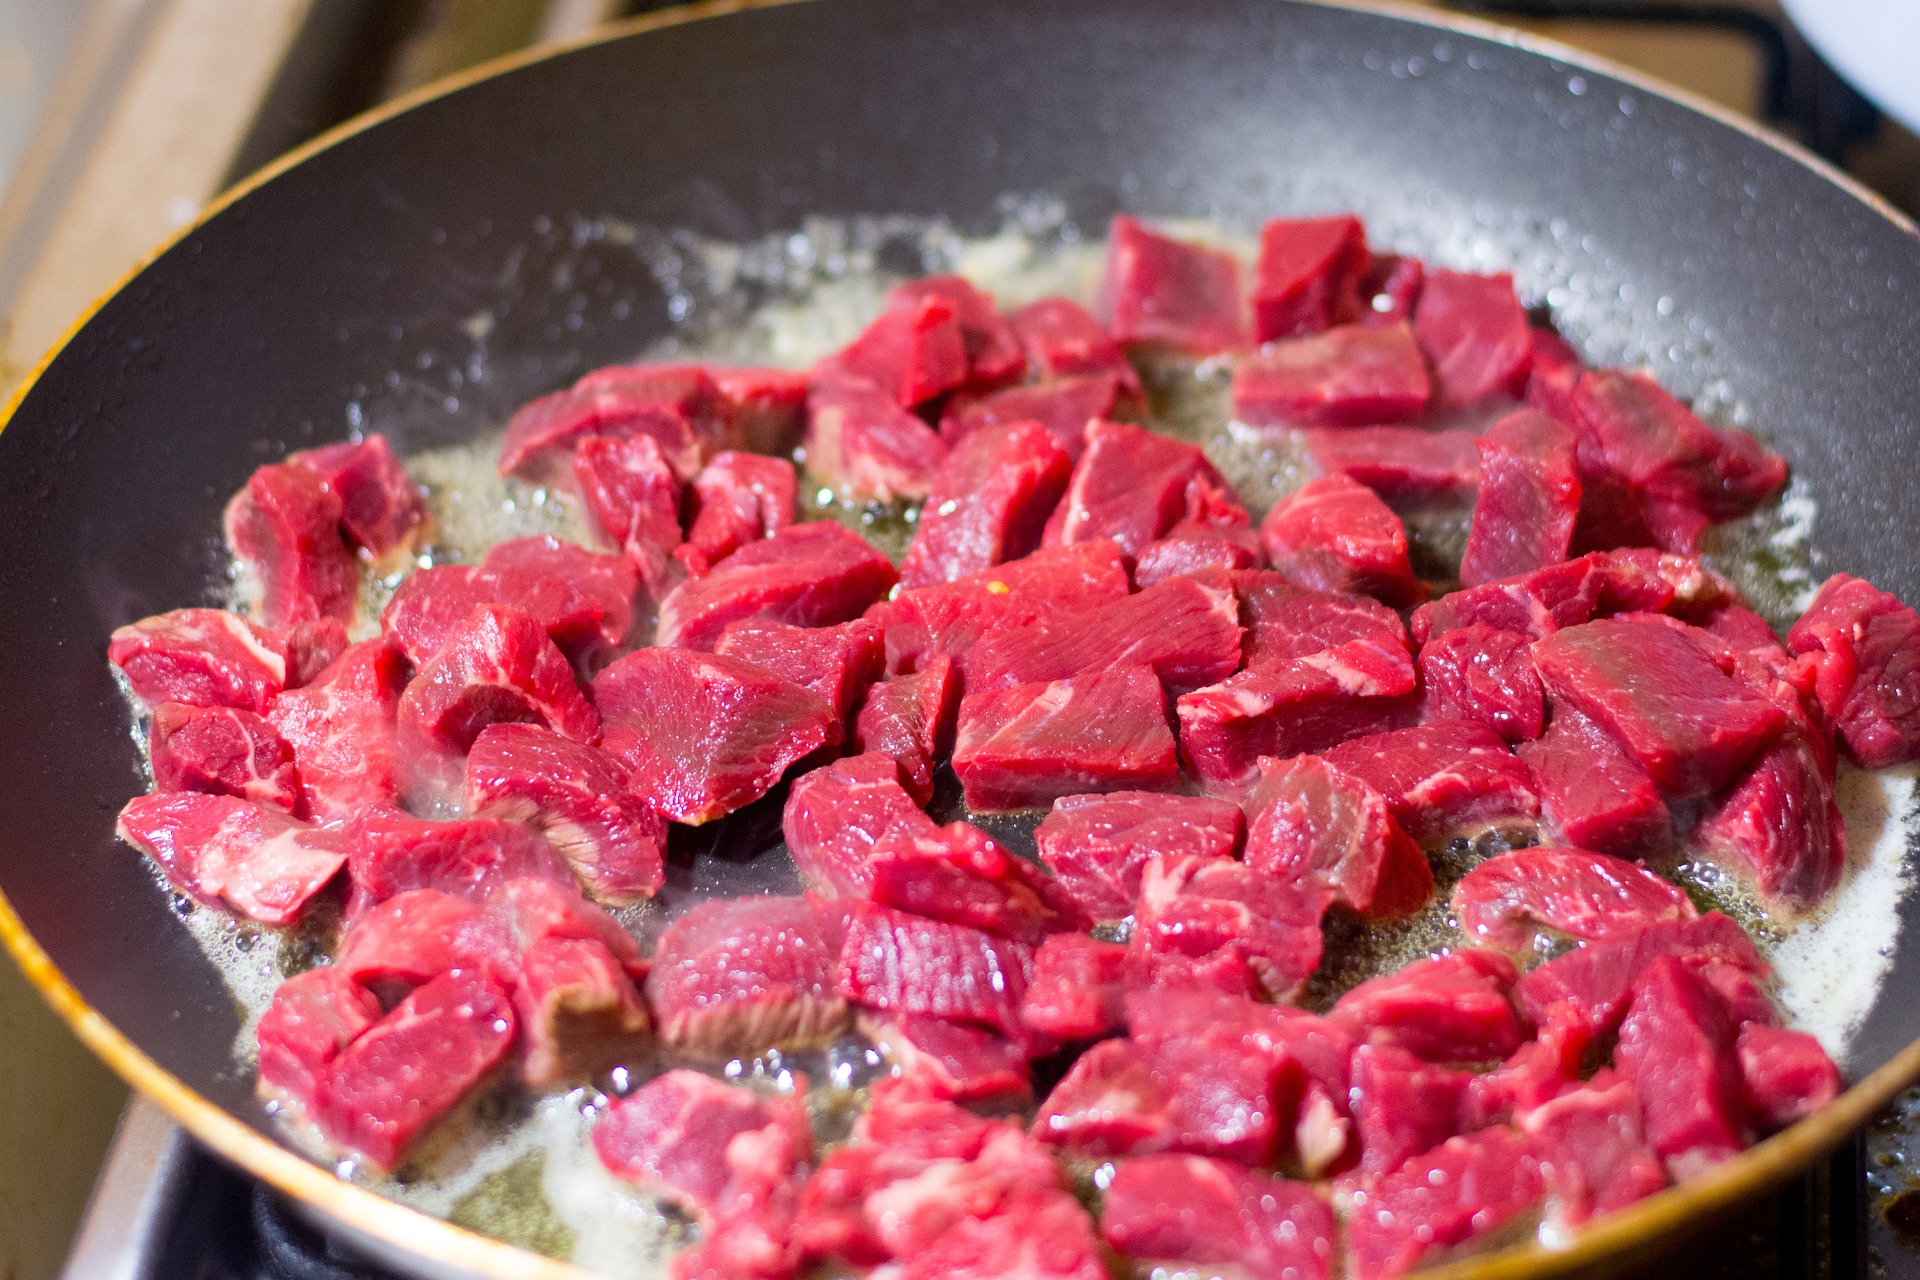 Reduzir o consumo de carne vermelha ajuda a desinflamar o organismo? Entenda